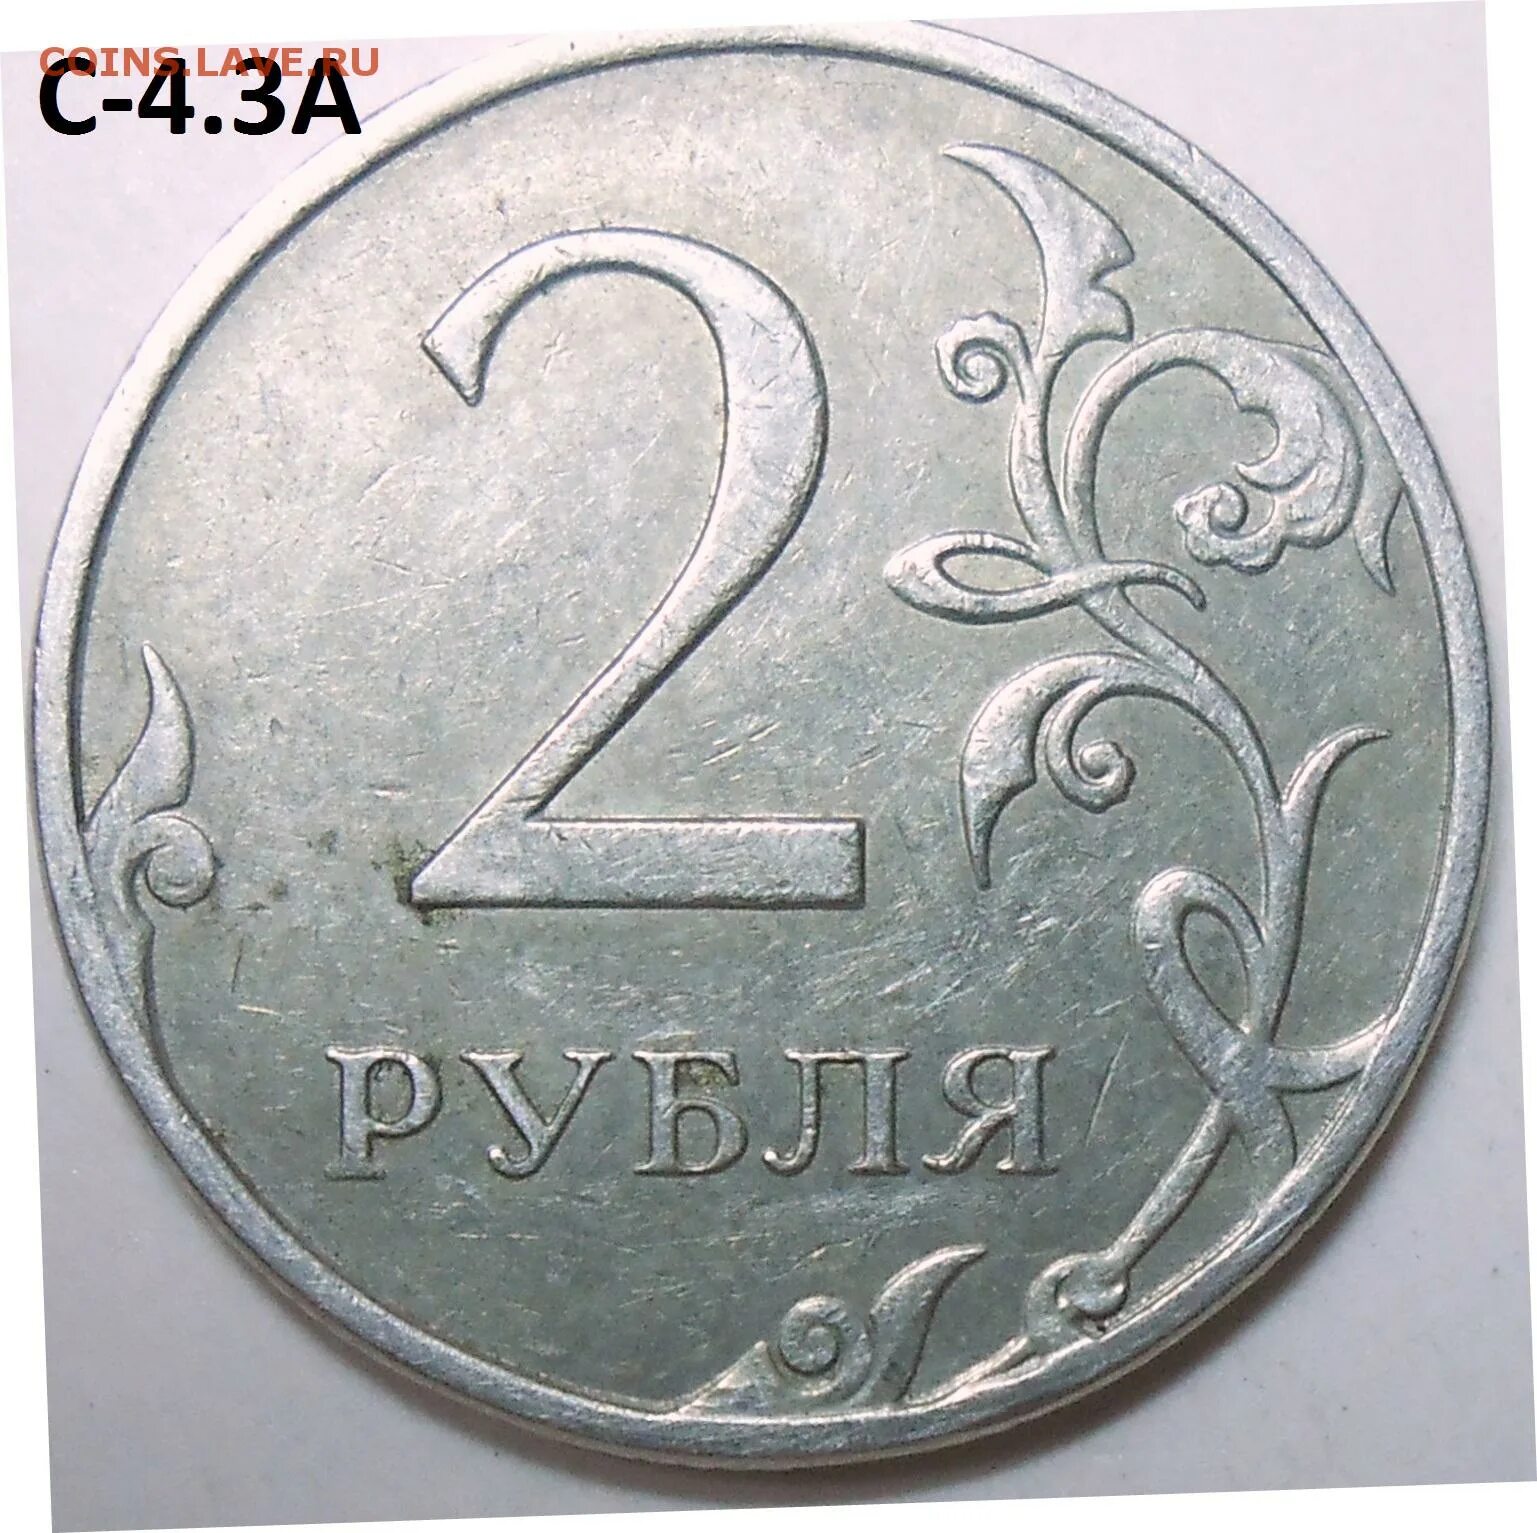 22 апр 17. 2 Рубля 1997 ММД. 2 Руб 1997 ММД. 2 Рубля 1997 СПДМ золото. Редкий ли 2 рубль 1997.